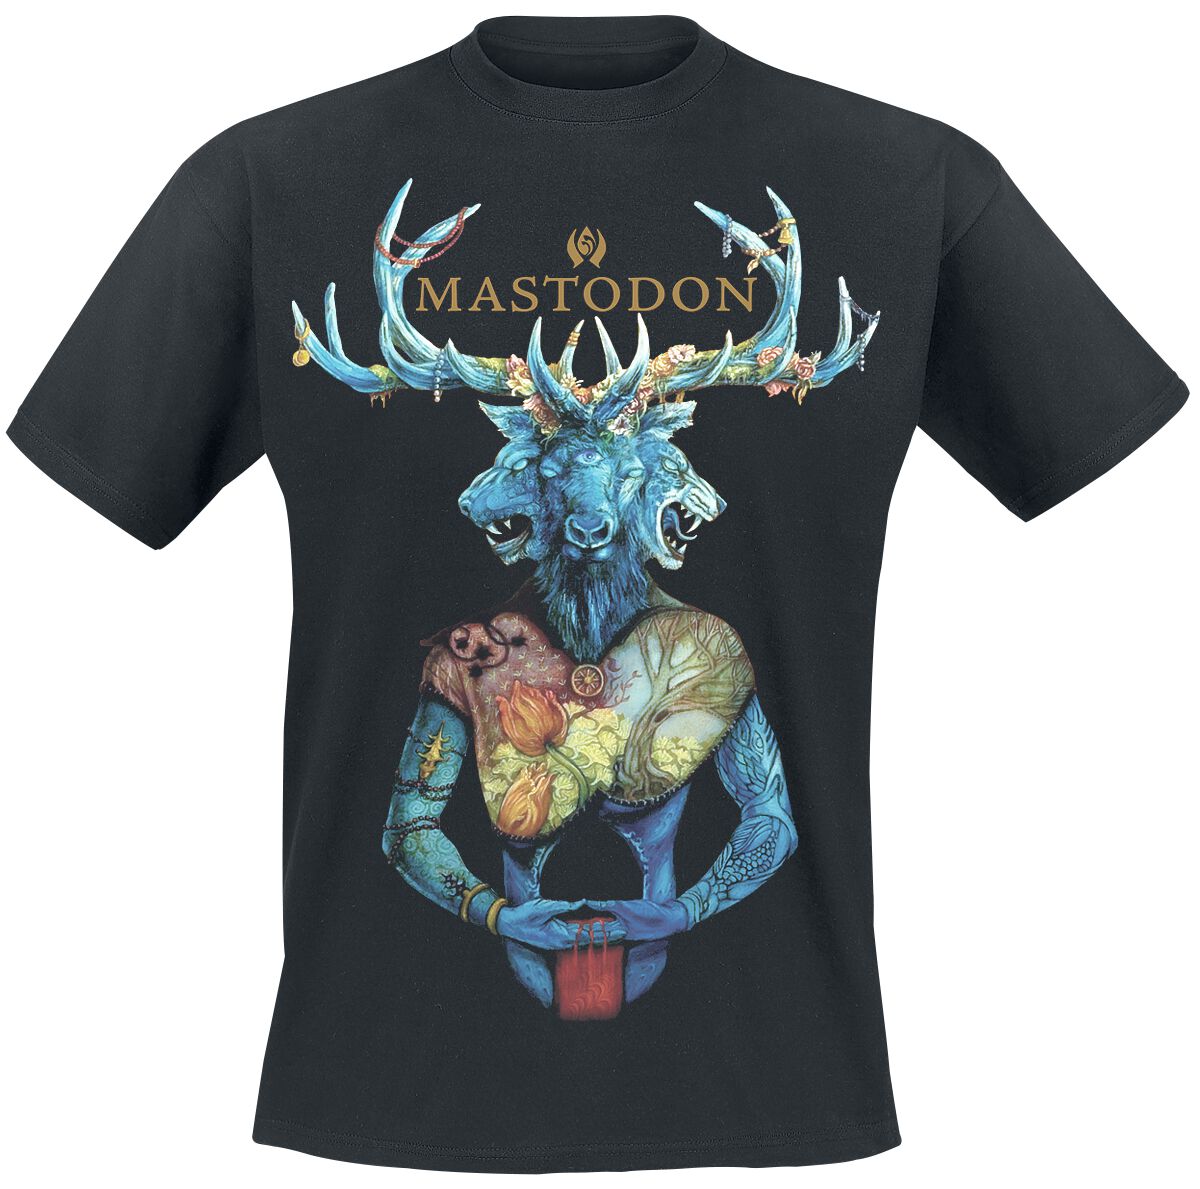 Mastodon T-Shirt - Blood mountain - S bis XXL - für Männer - Größe XL - schwarz  - Lizenziertes Merchandise!